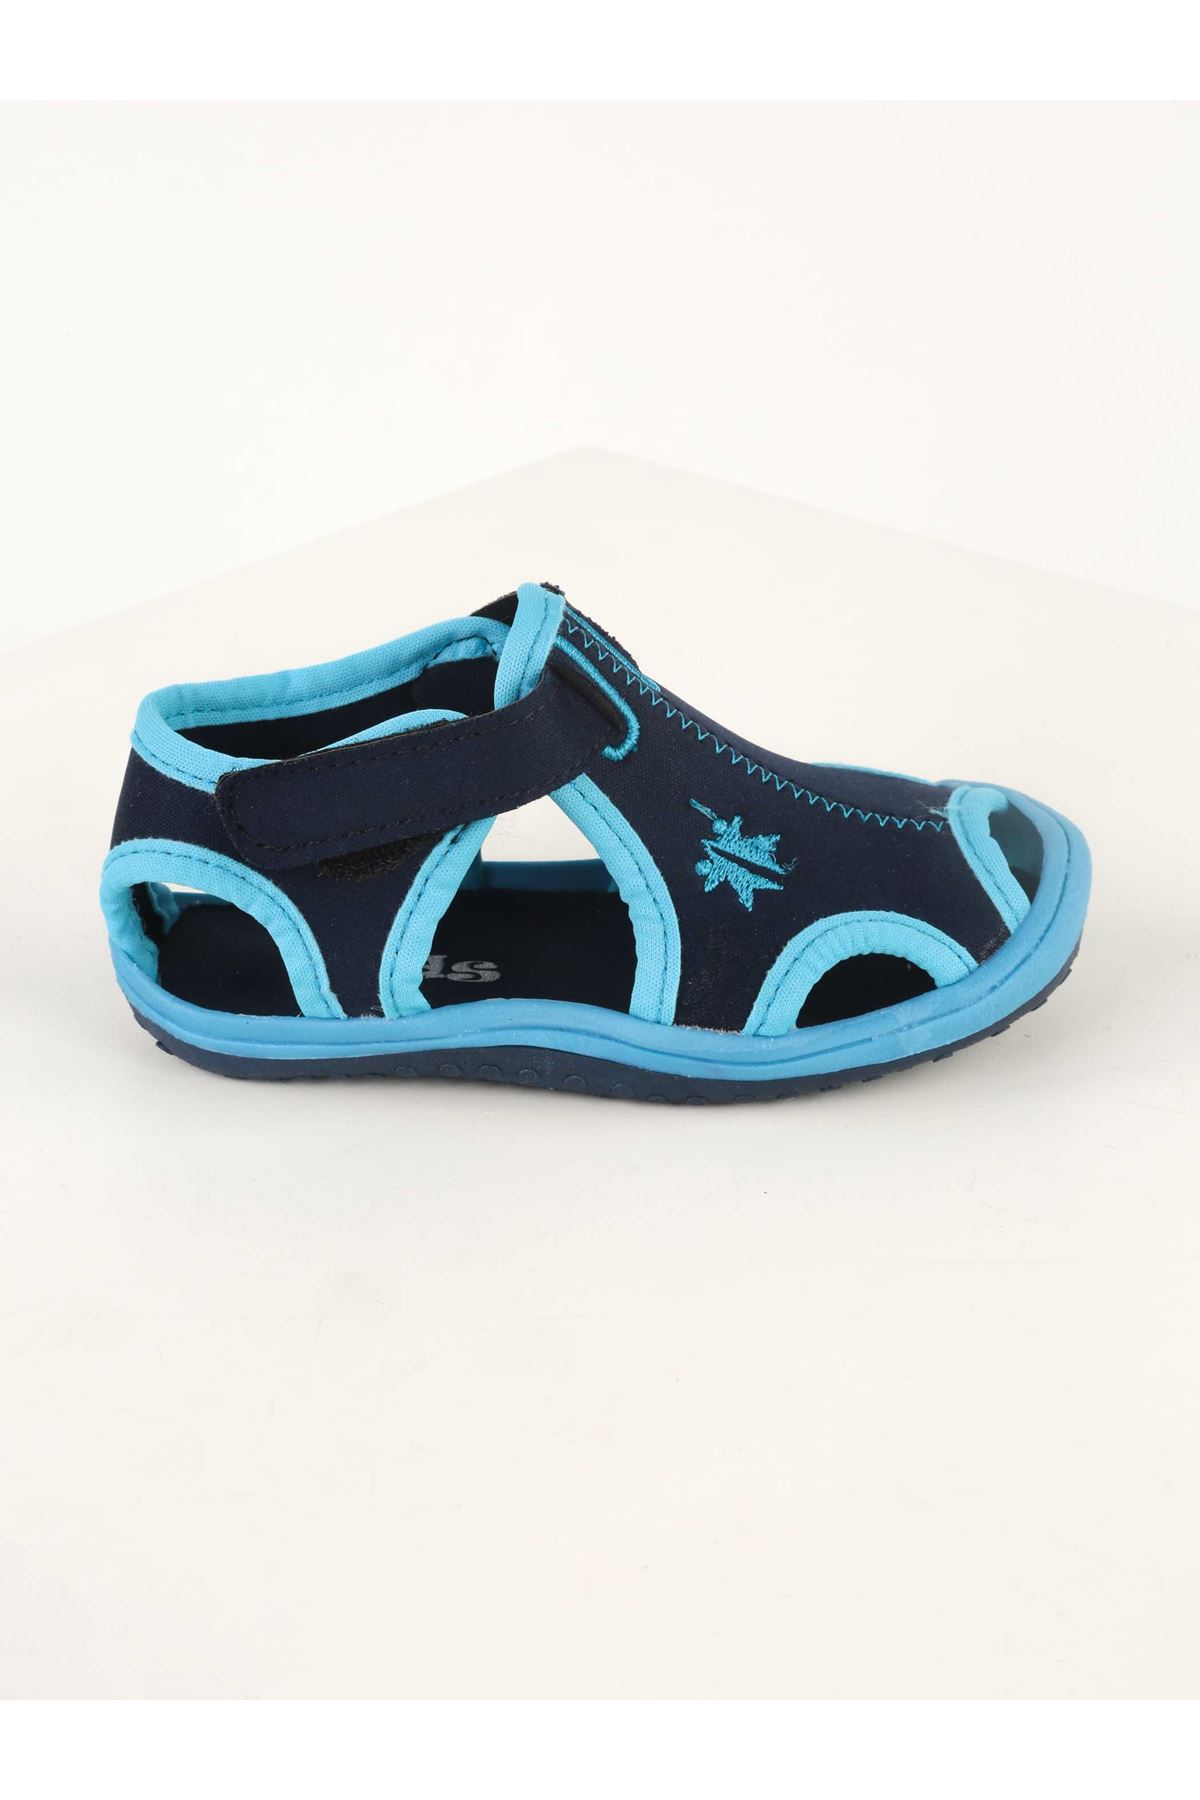 Modakids - Çocuk ve Bebek Giyim-Blue baby boy summer sandals nursery ...